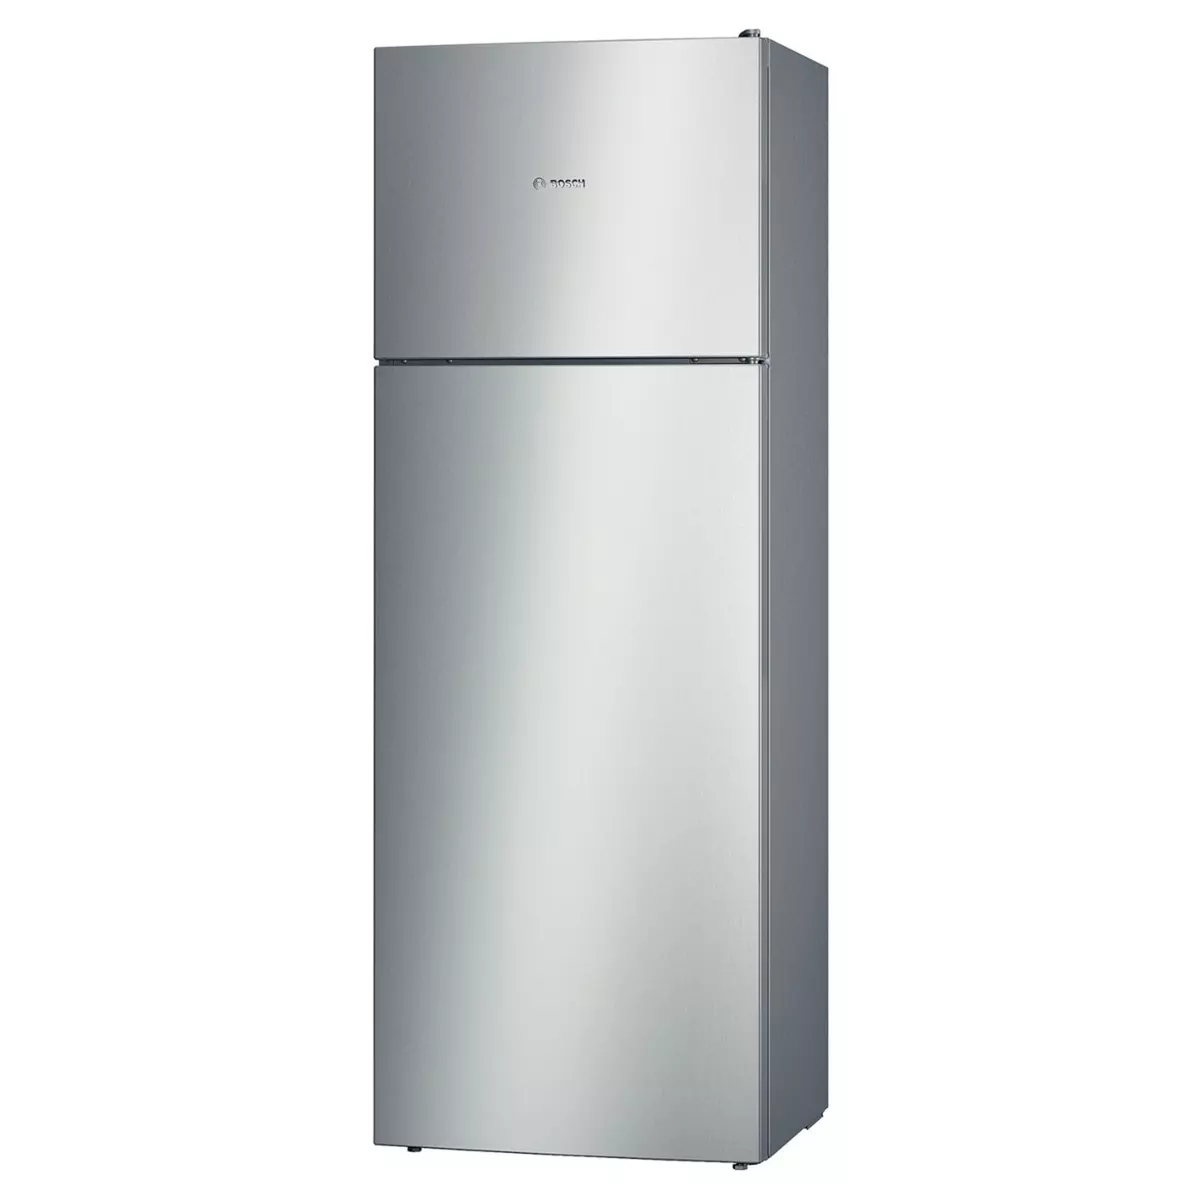 BOSCH Réfrigérateur 2 portes KDV47VL30, 401L, Froid Brassé